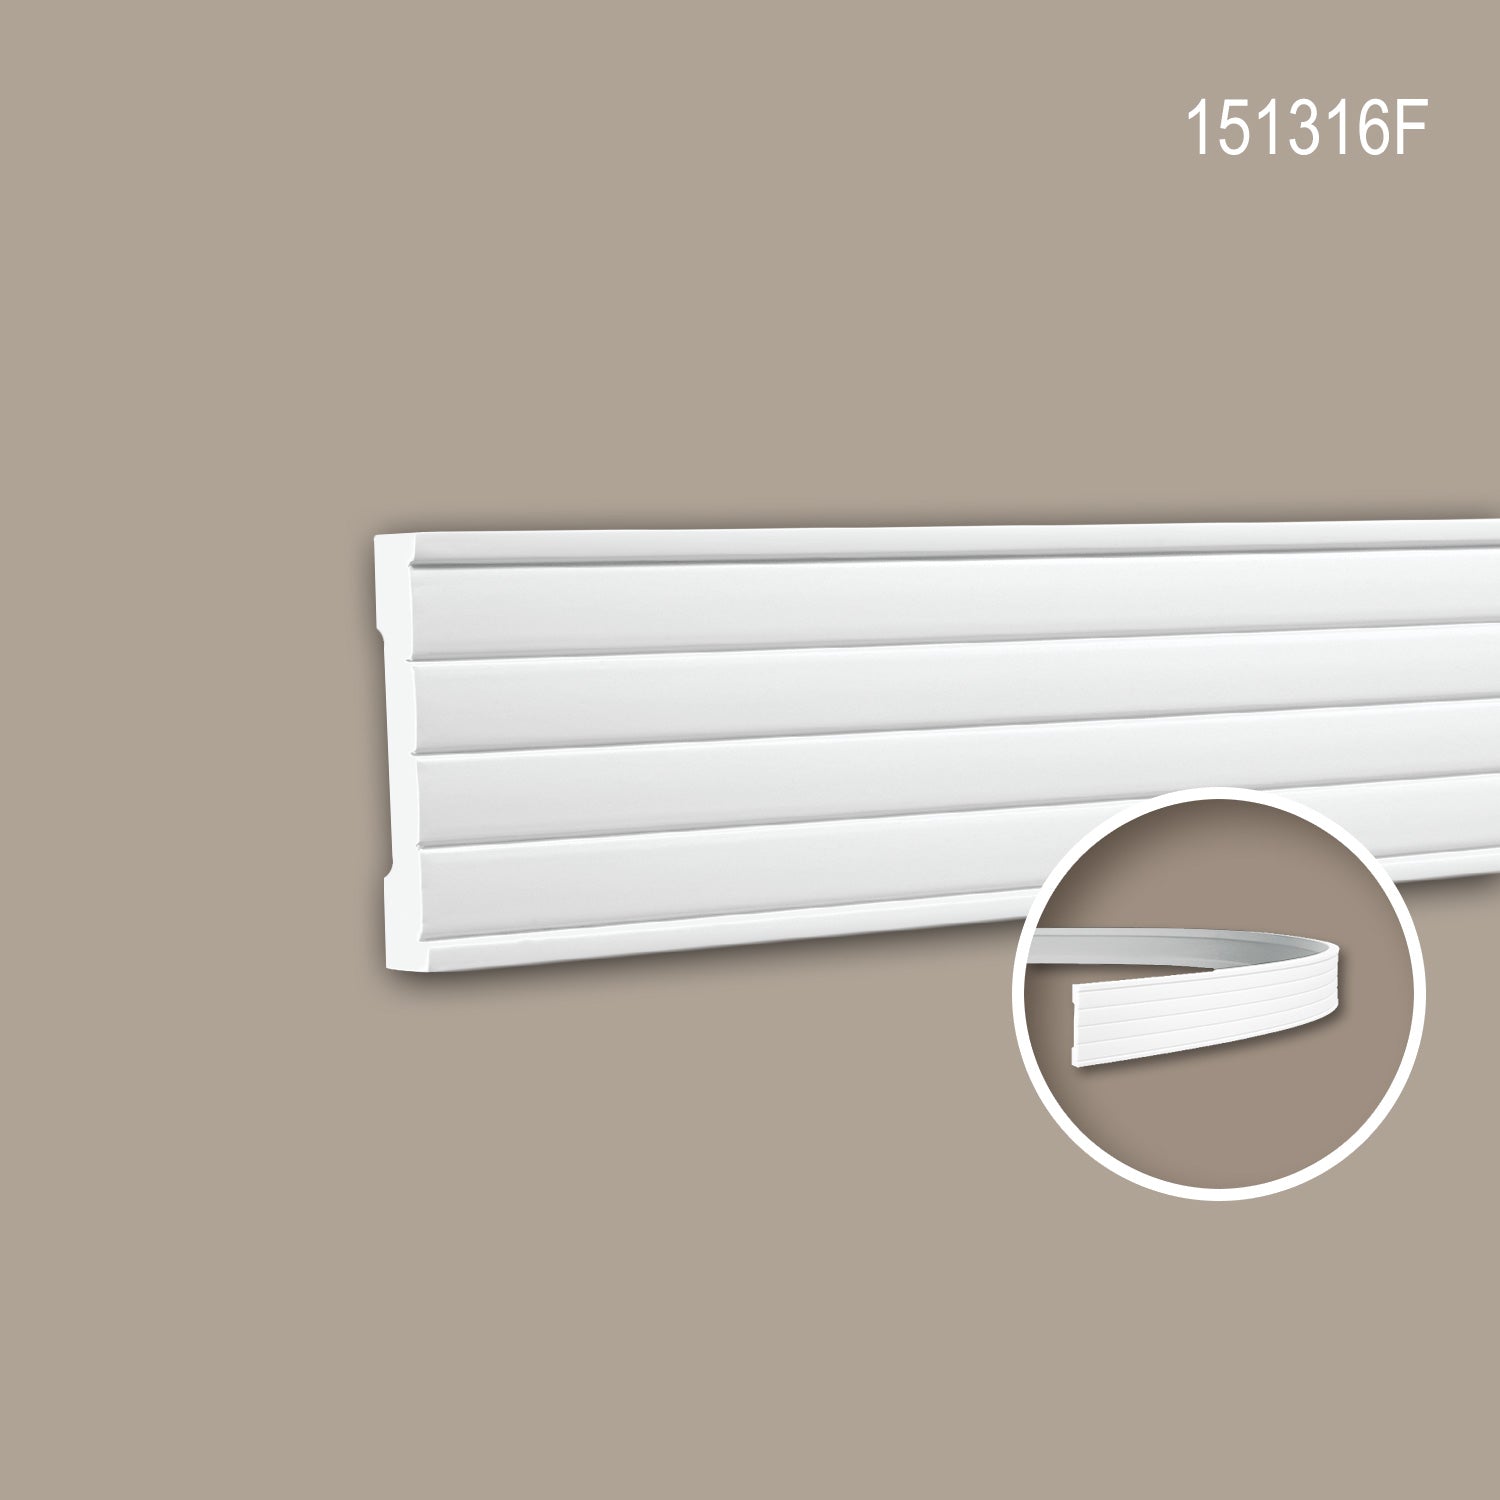 Cimaise 151316F Profhome Moulure décorative flexible design moderne blanc 2 m